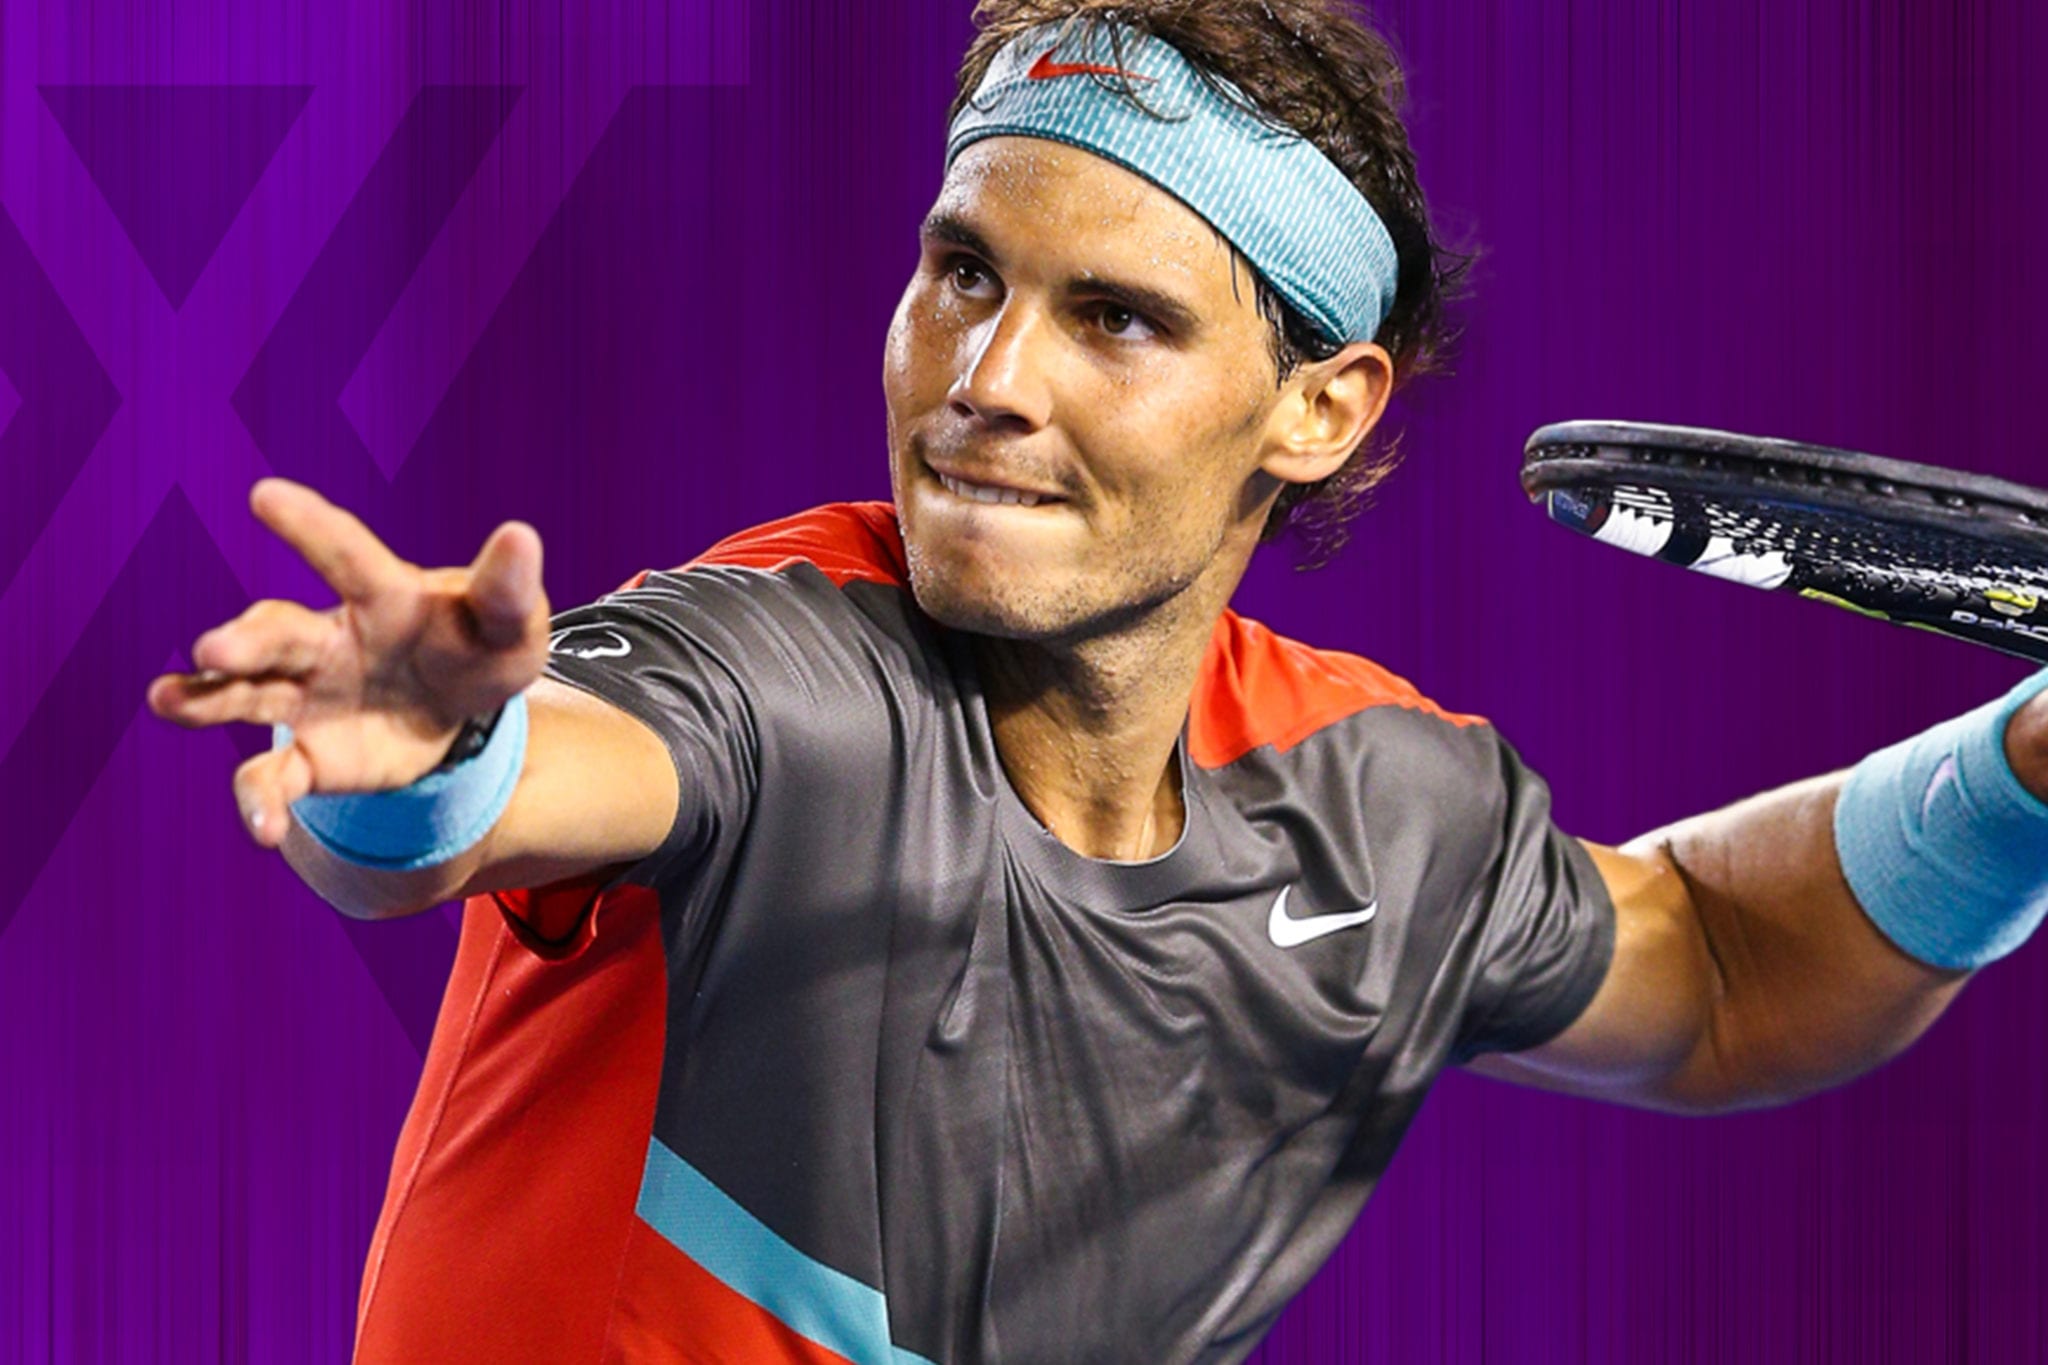 What Watch Does Rafael Nadal Wear?